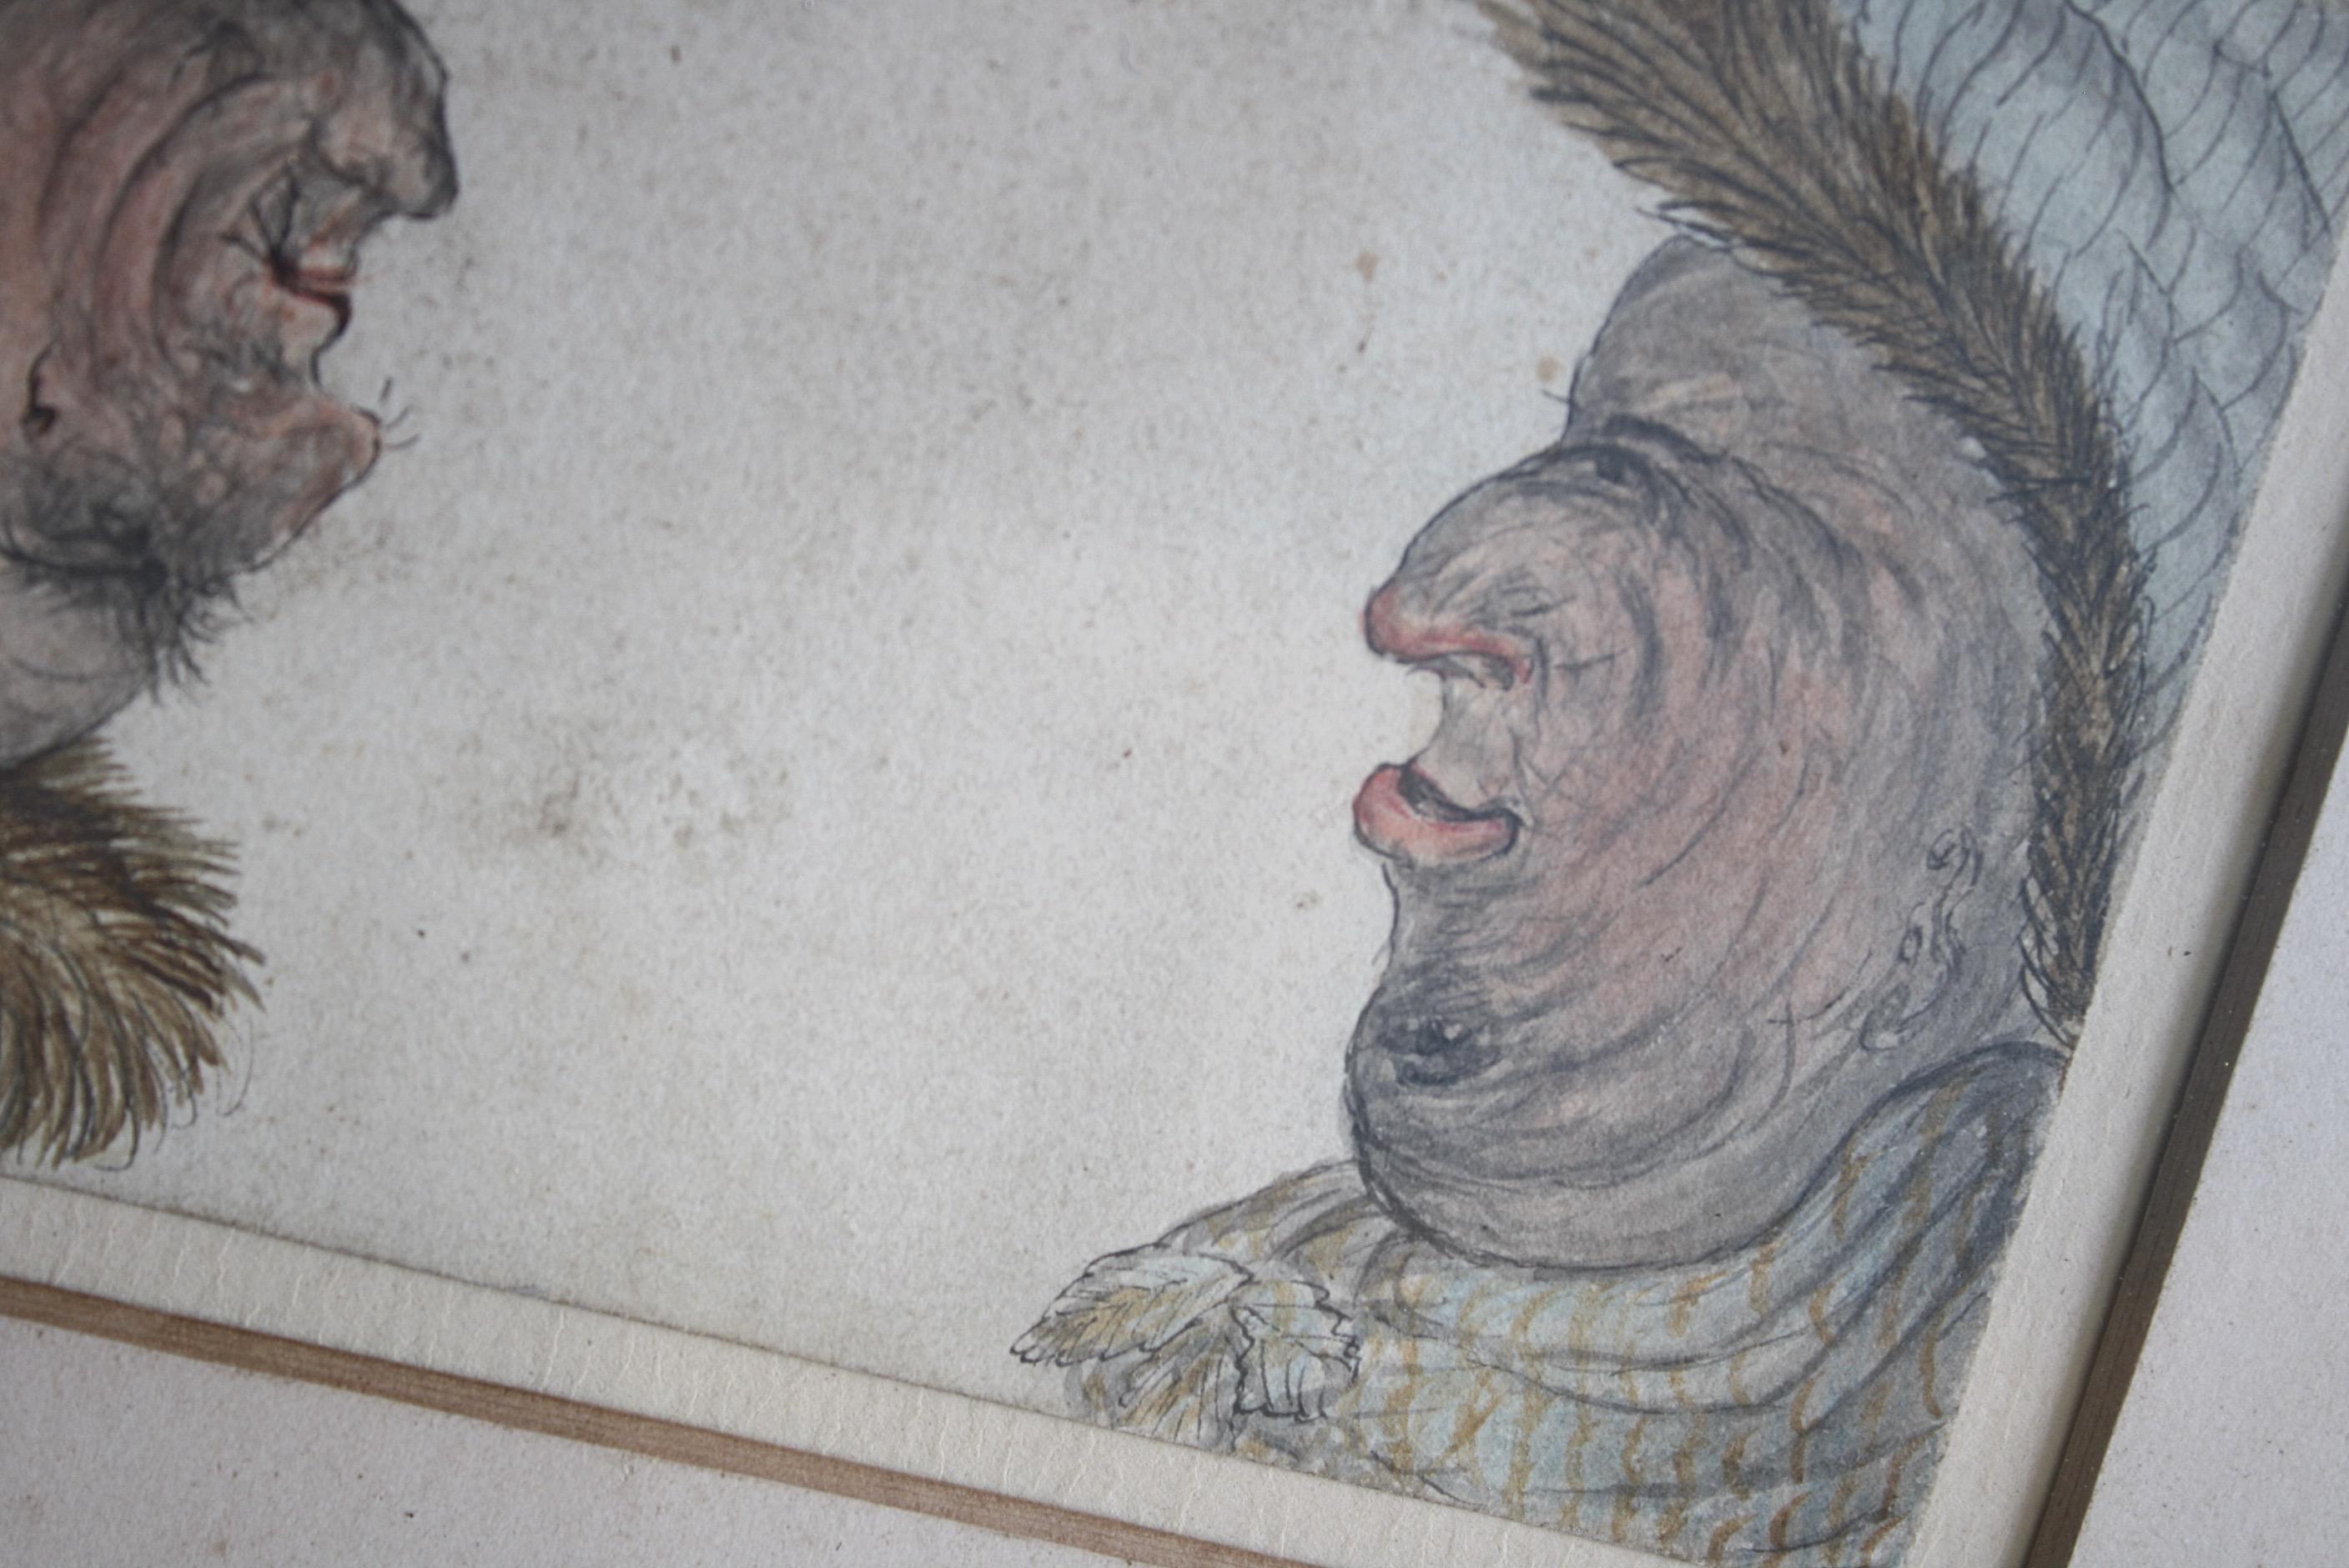 Ein ungewöhnliches groteskes Wendeprofilbild von zwei gut verwitterten Herren.

Aquarell und Tinte auf Papier, in einem späteren Rahmen im Regency-Stil mit Schilfrohr. 

Um 1860, englischer Ursprung 

27.5/23/1.2cm.